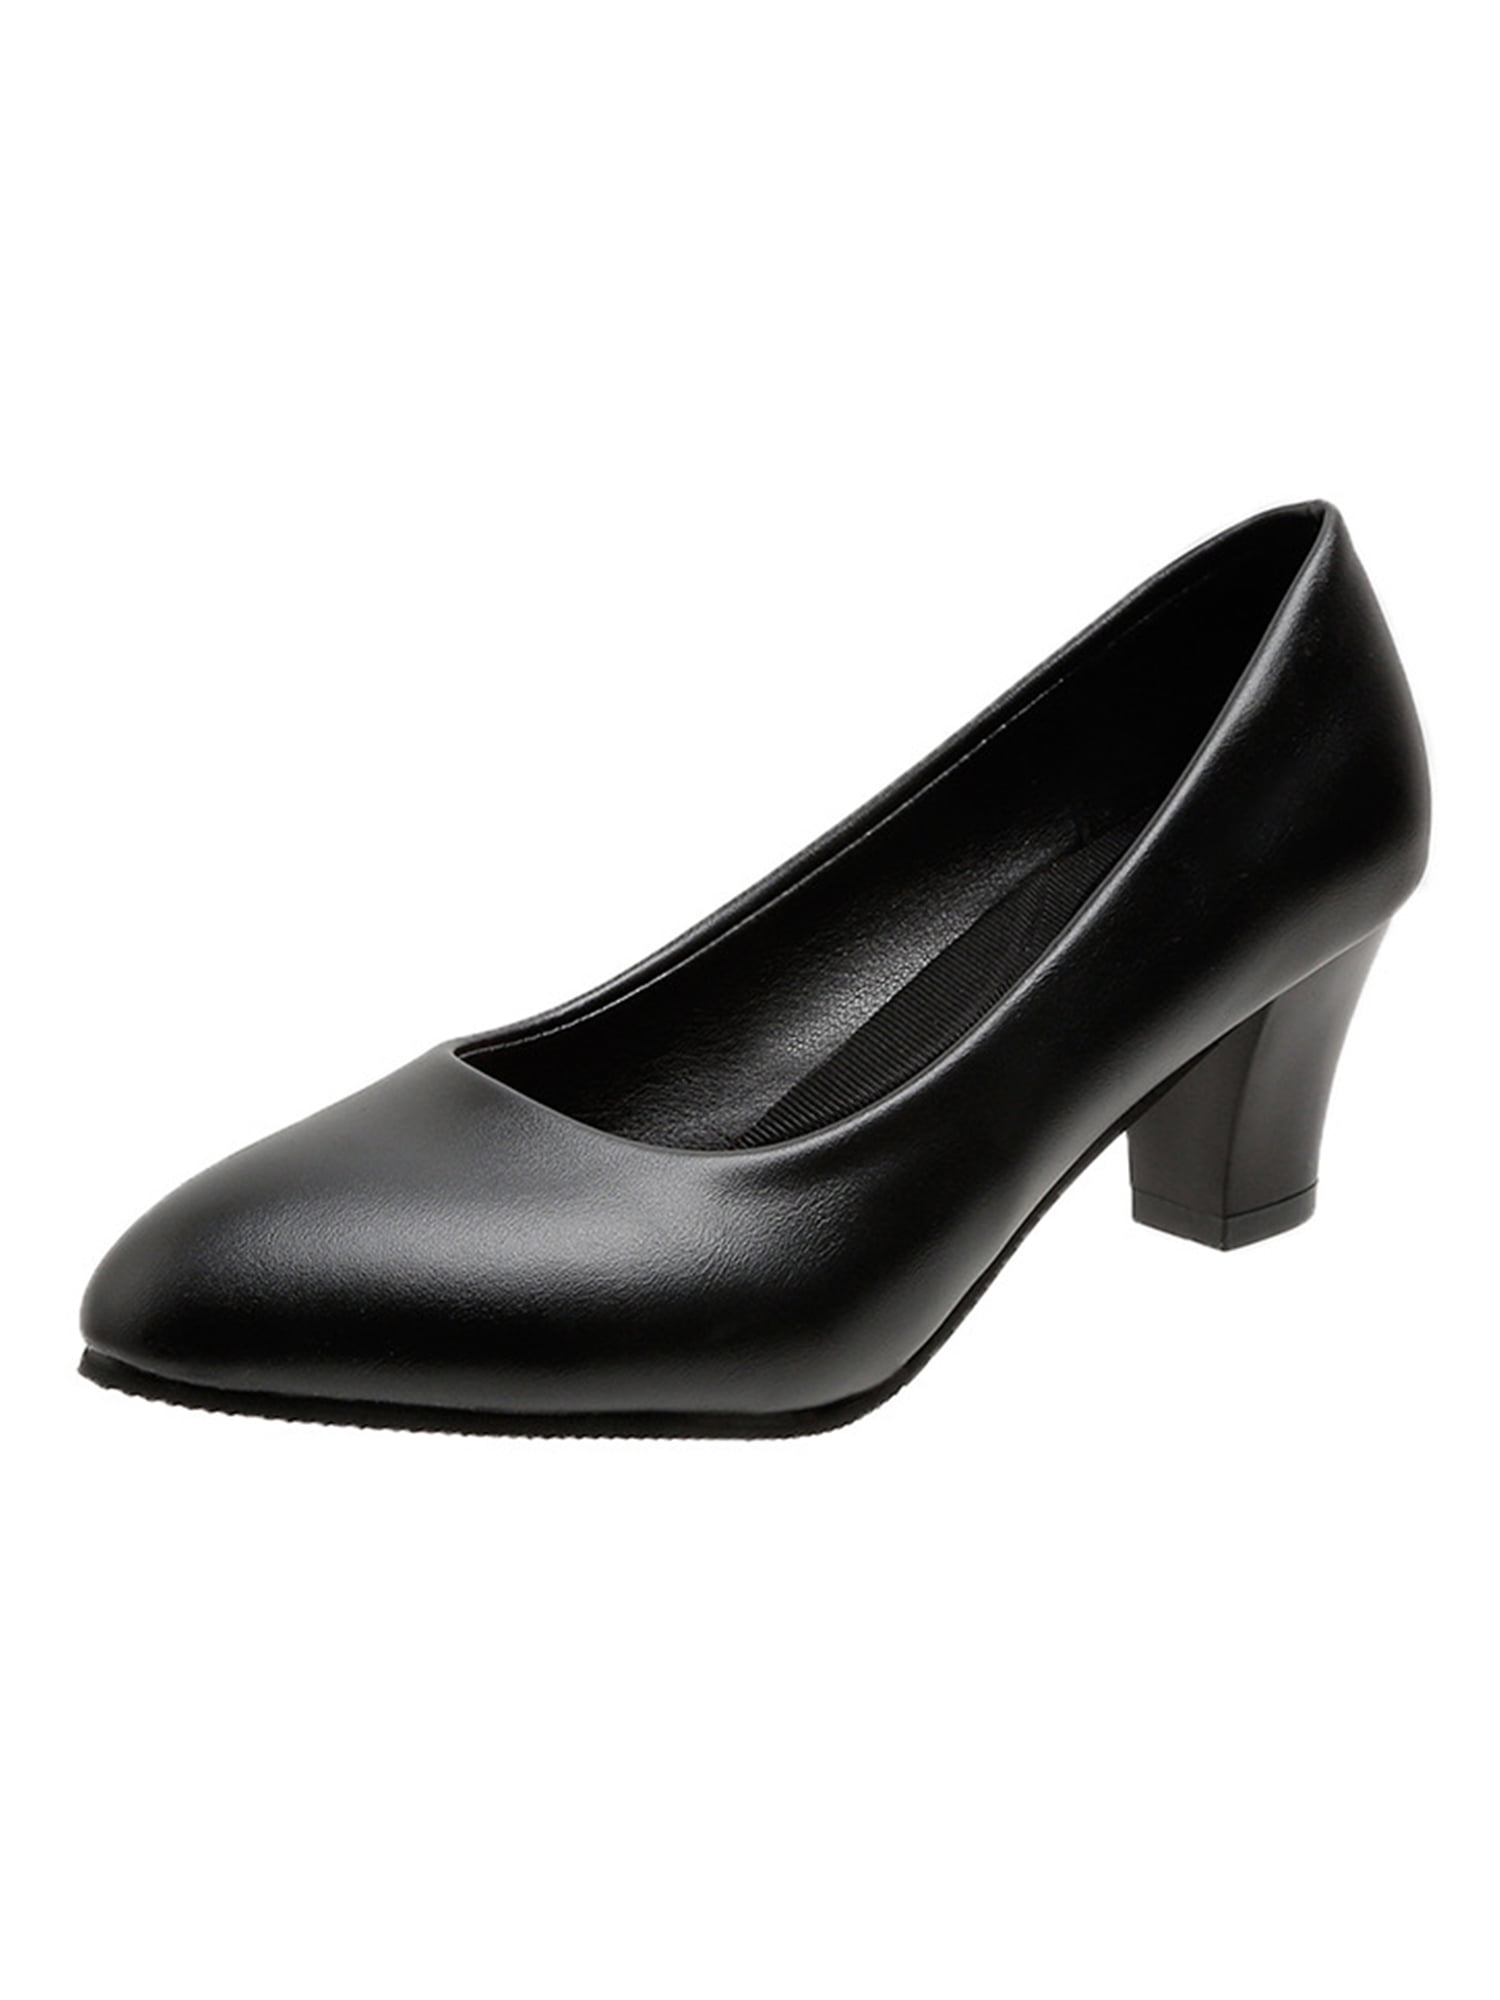 ladies black dress shoes